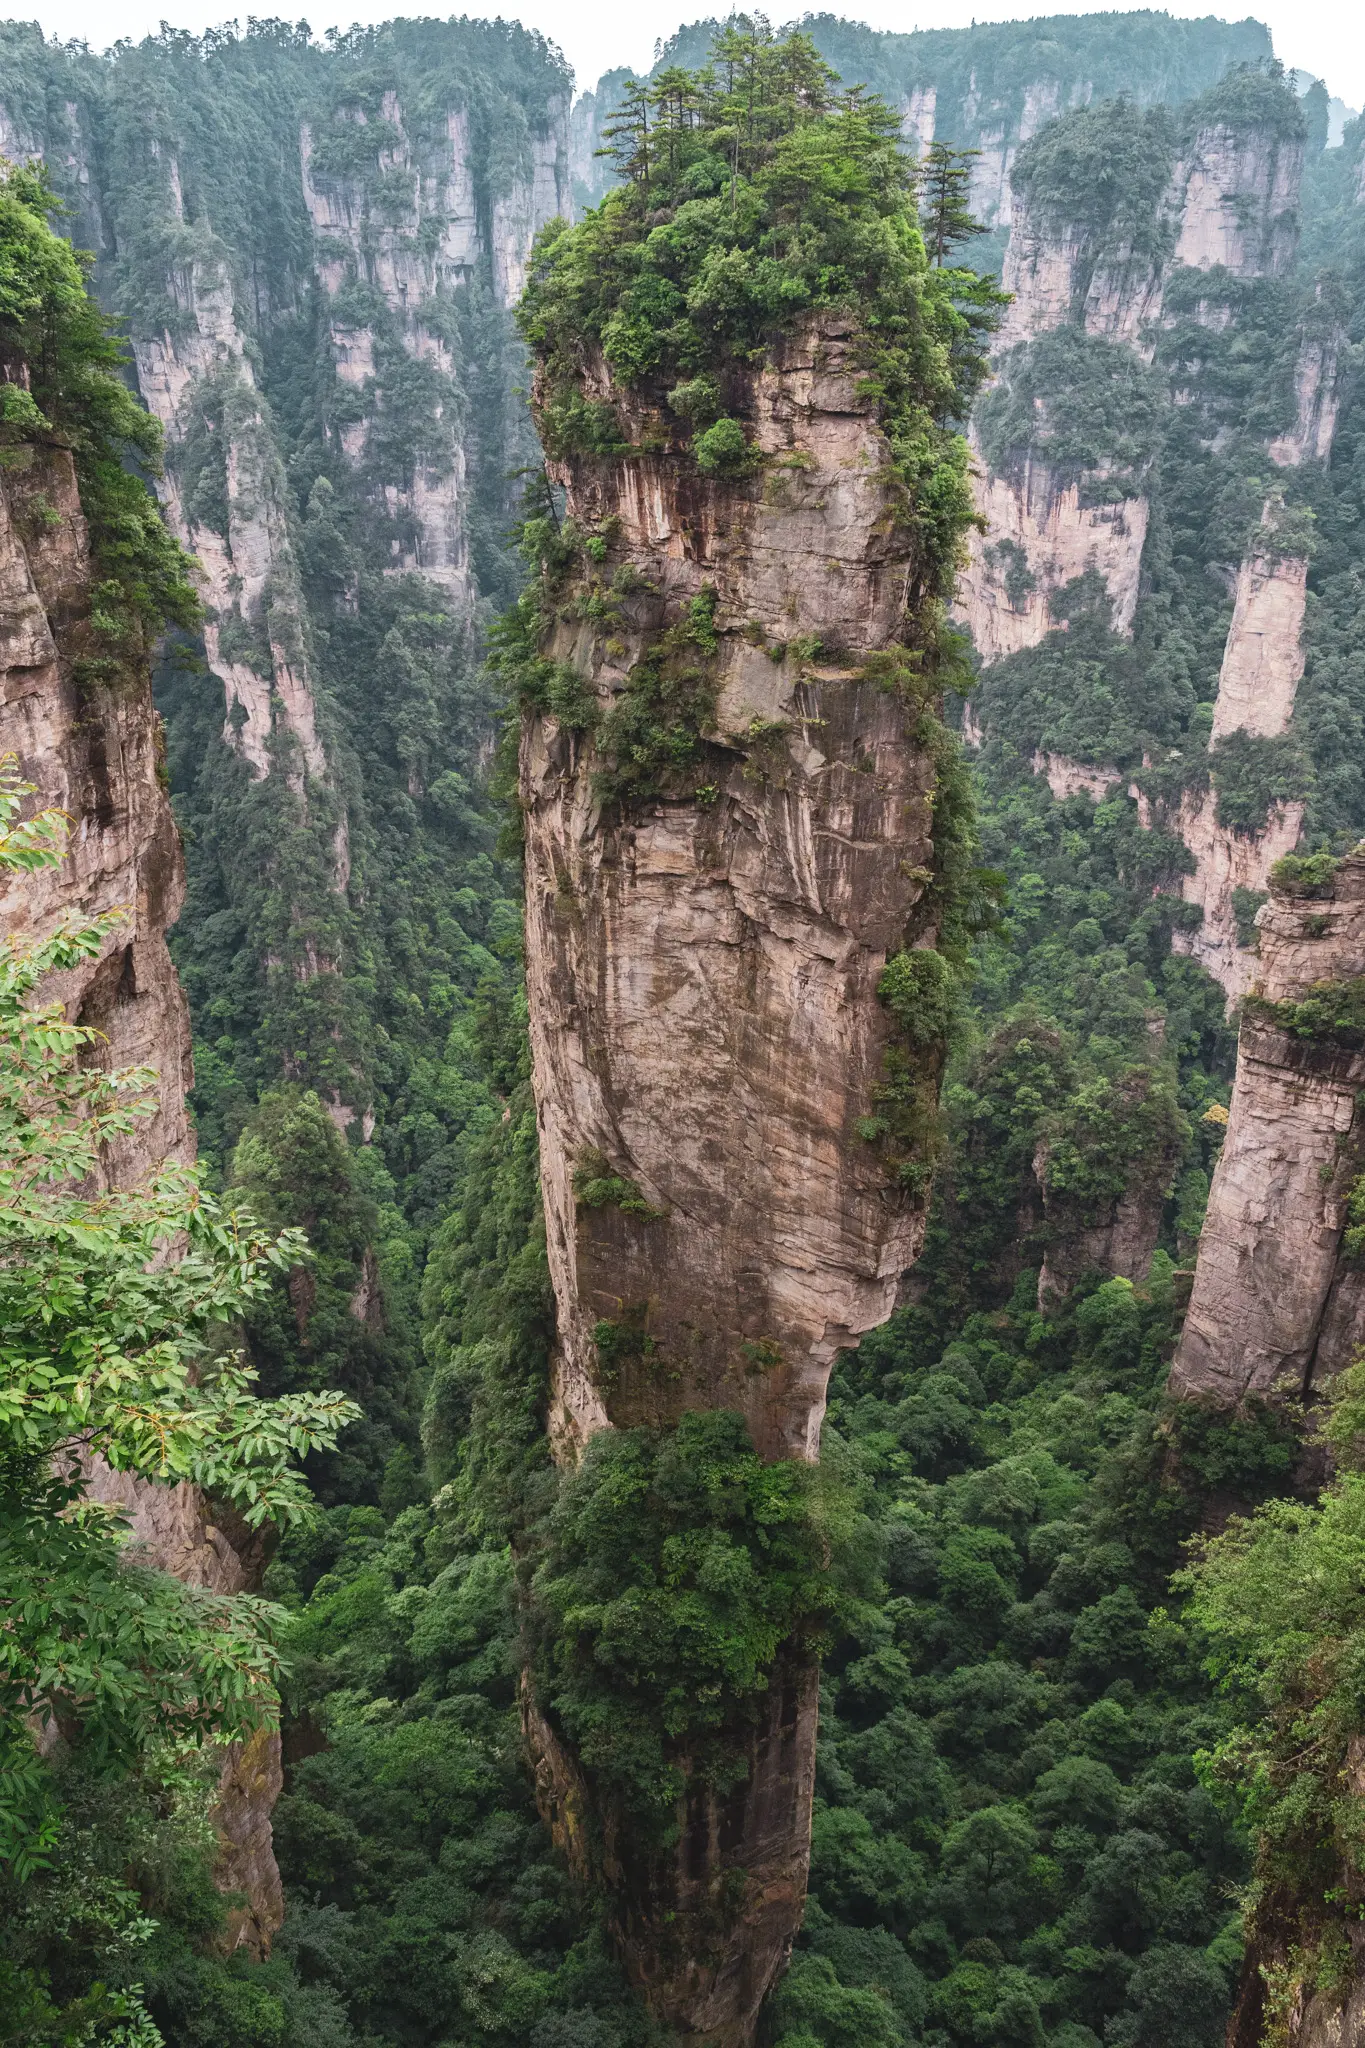 Unreal views in Zhangjiajie, China